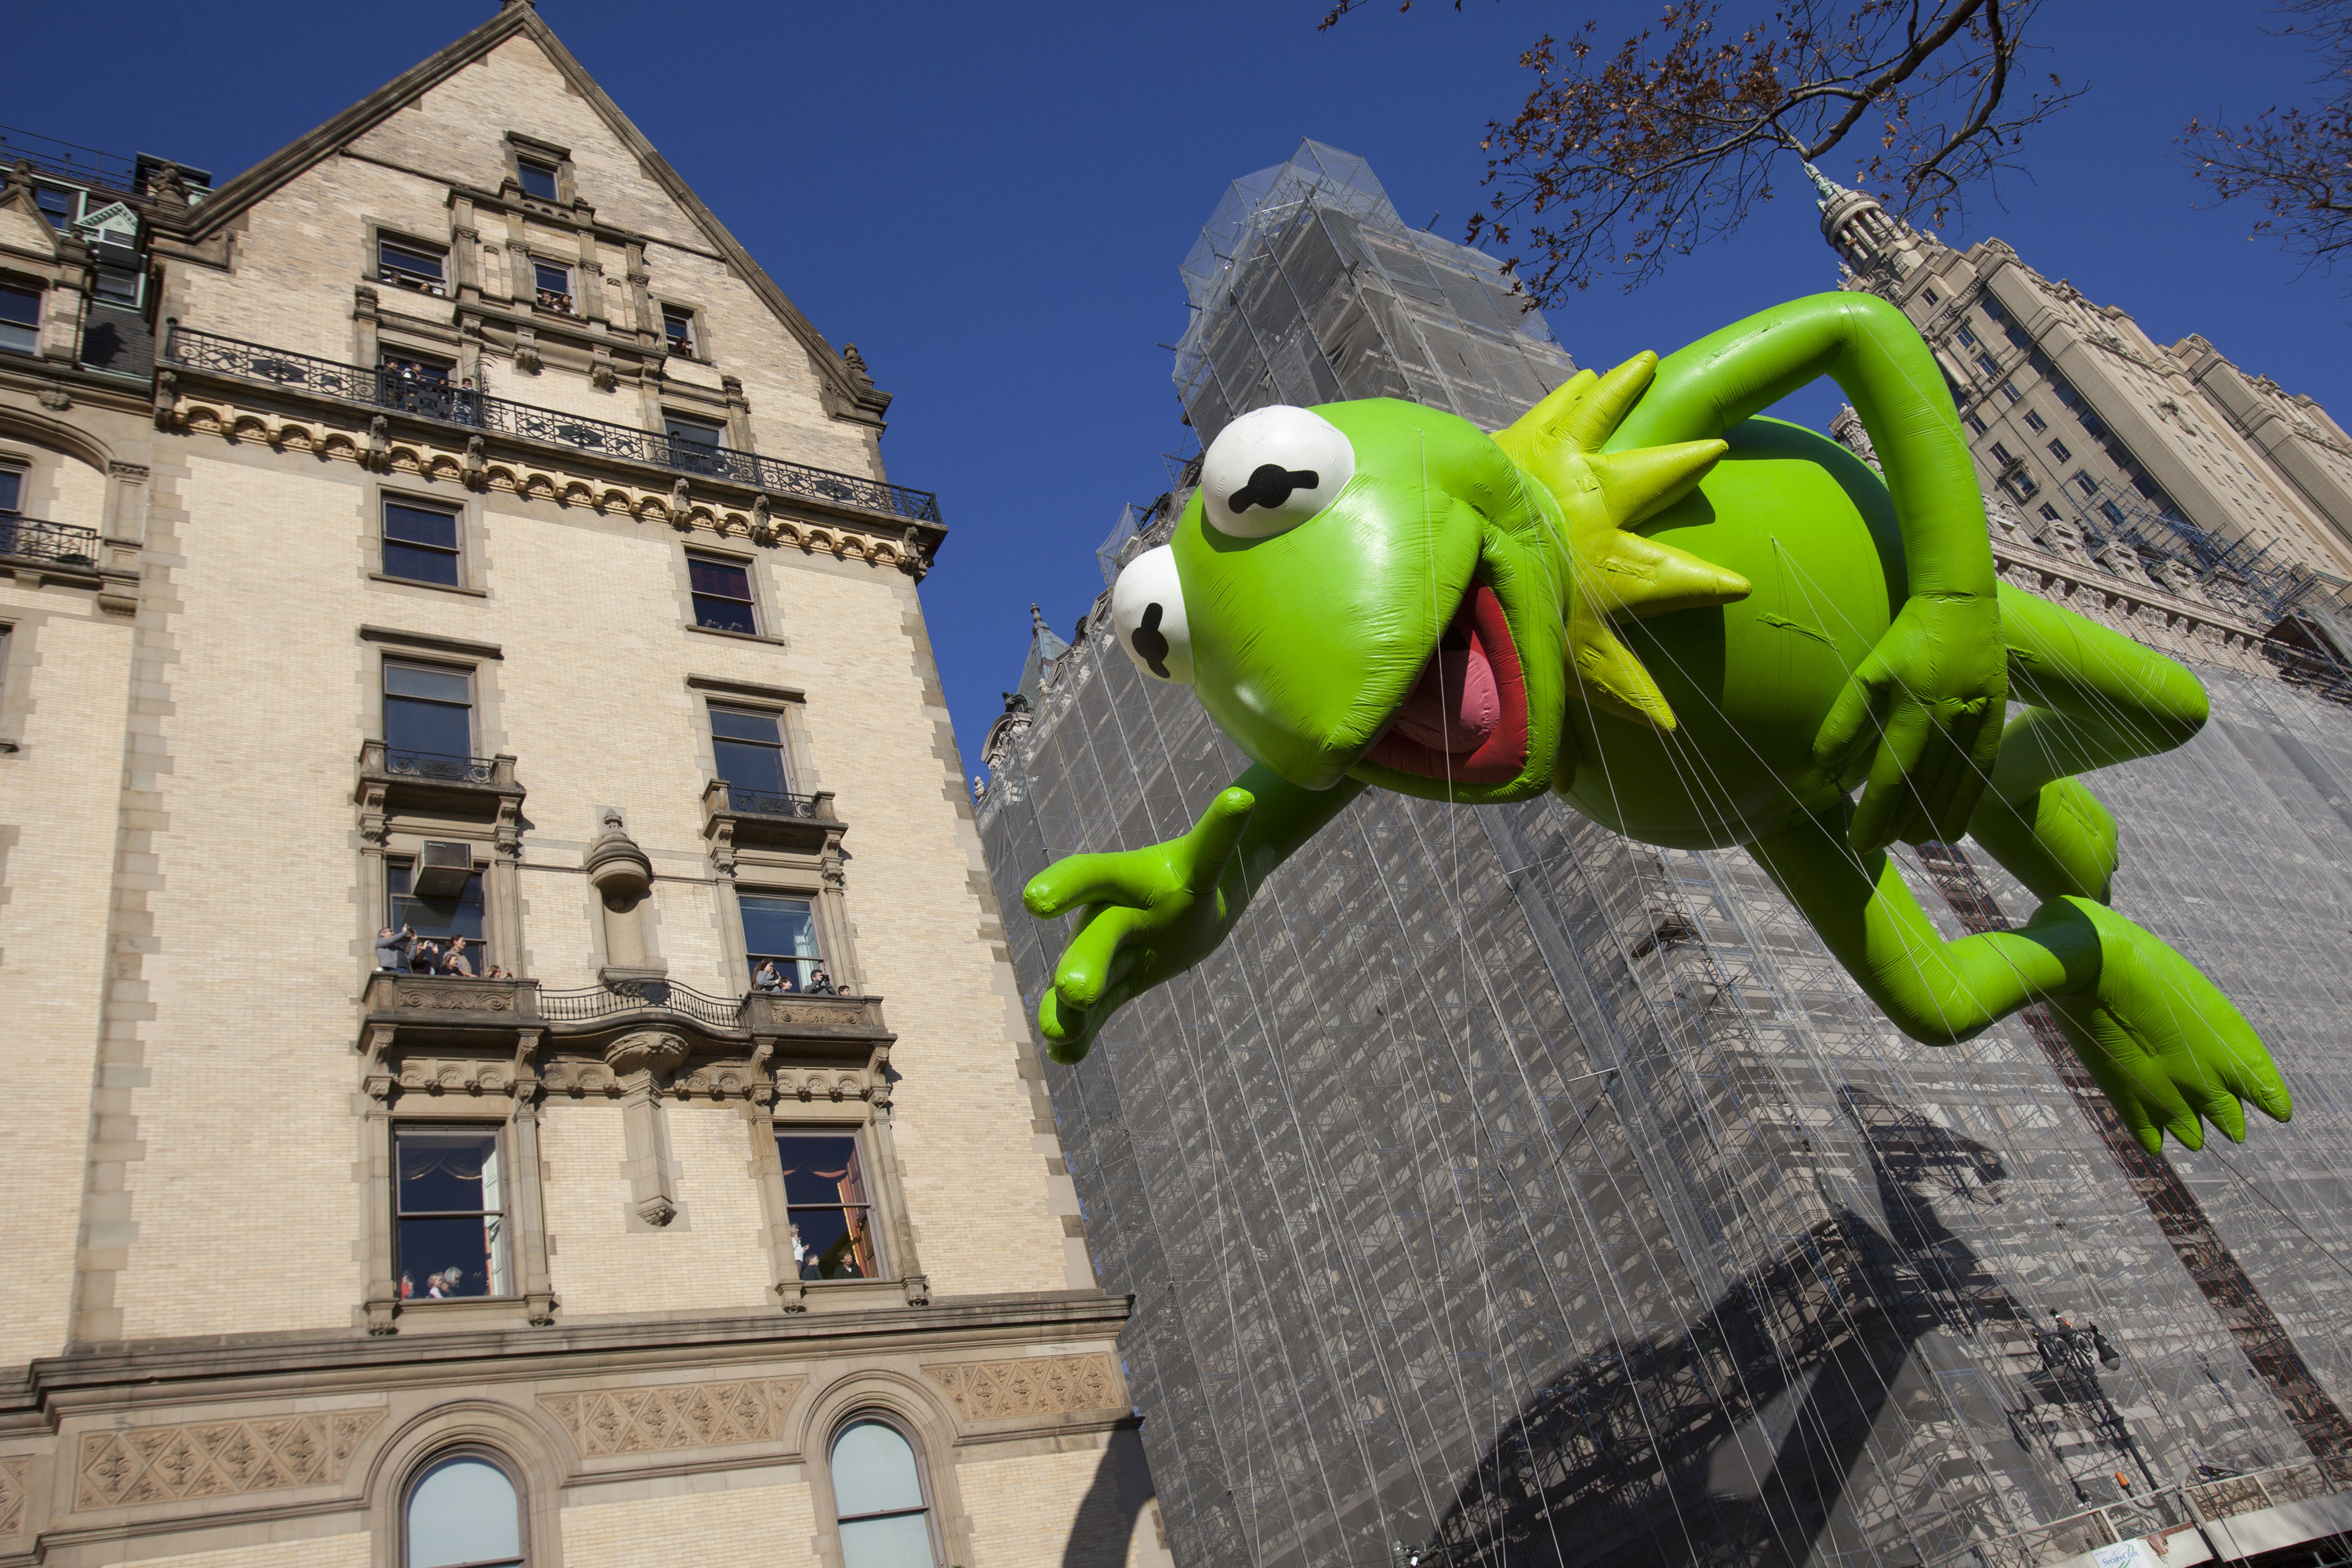 Kermit the Frog balloon